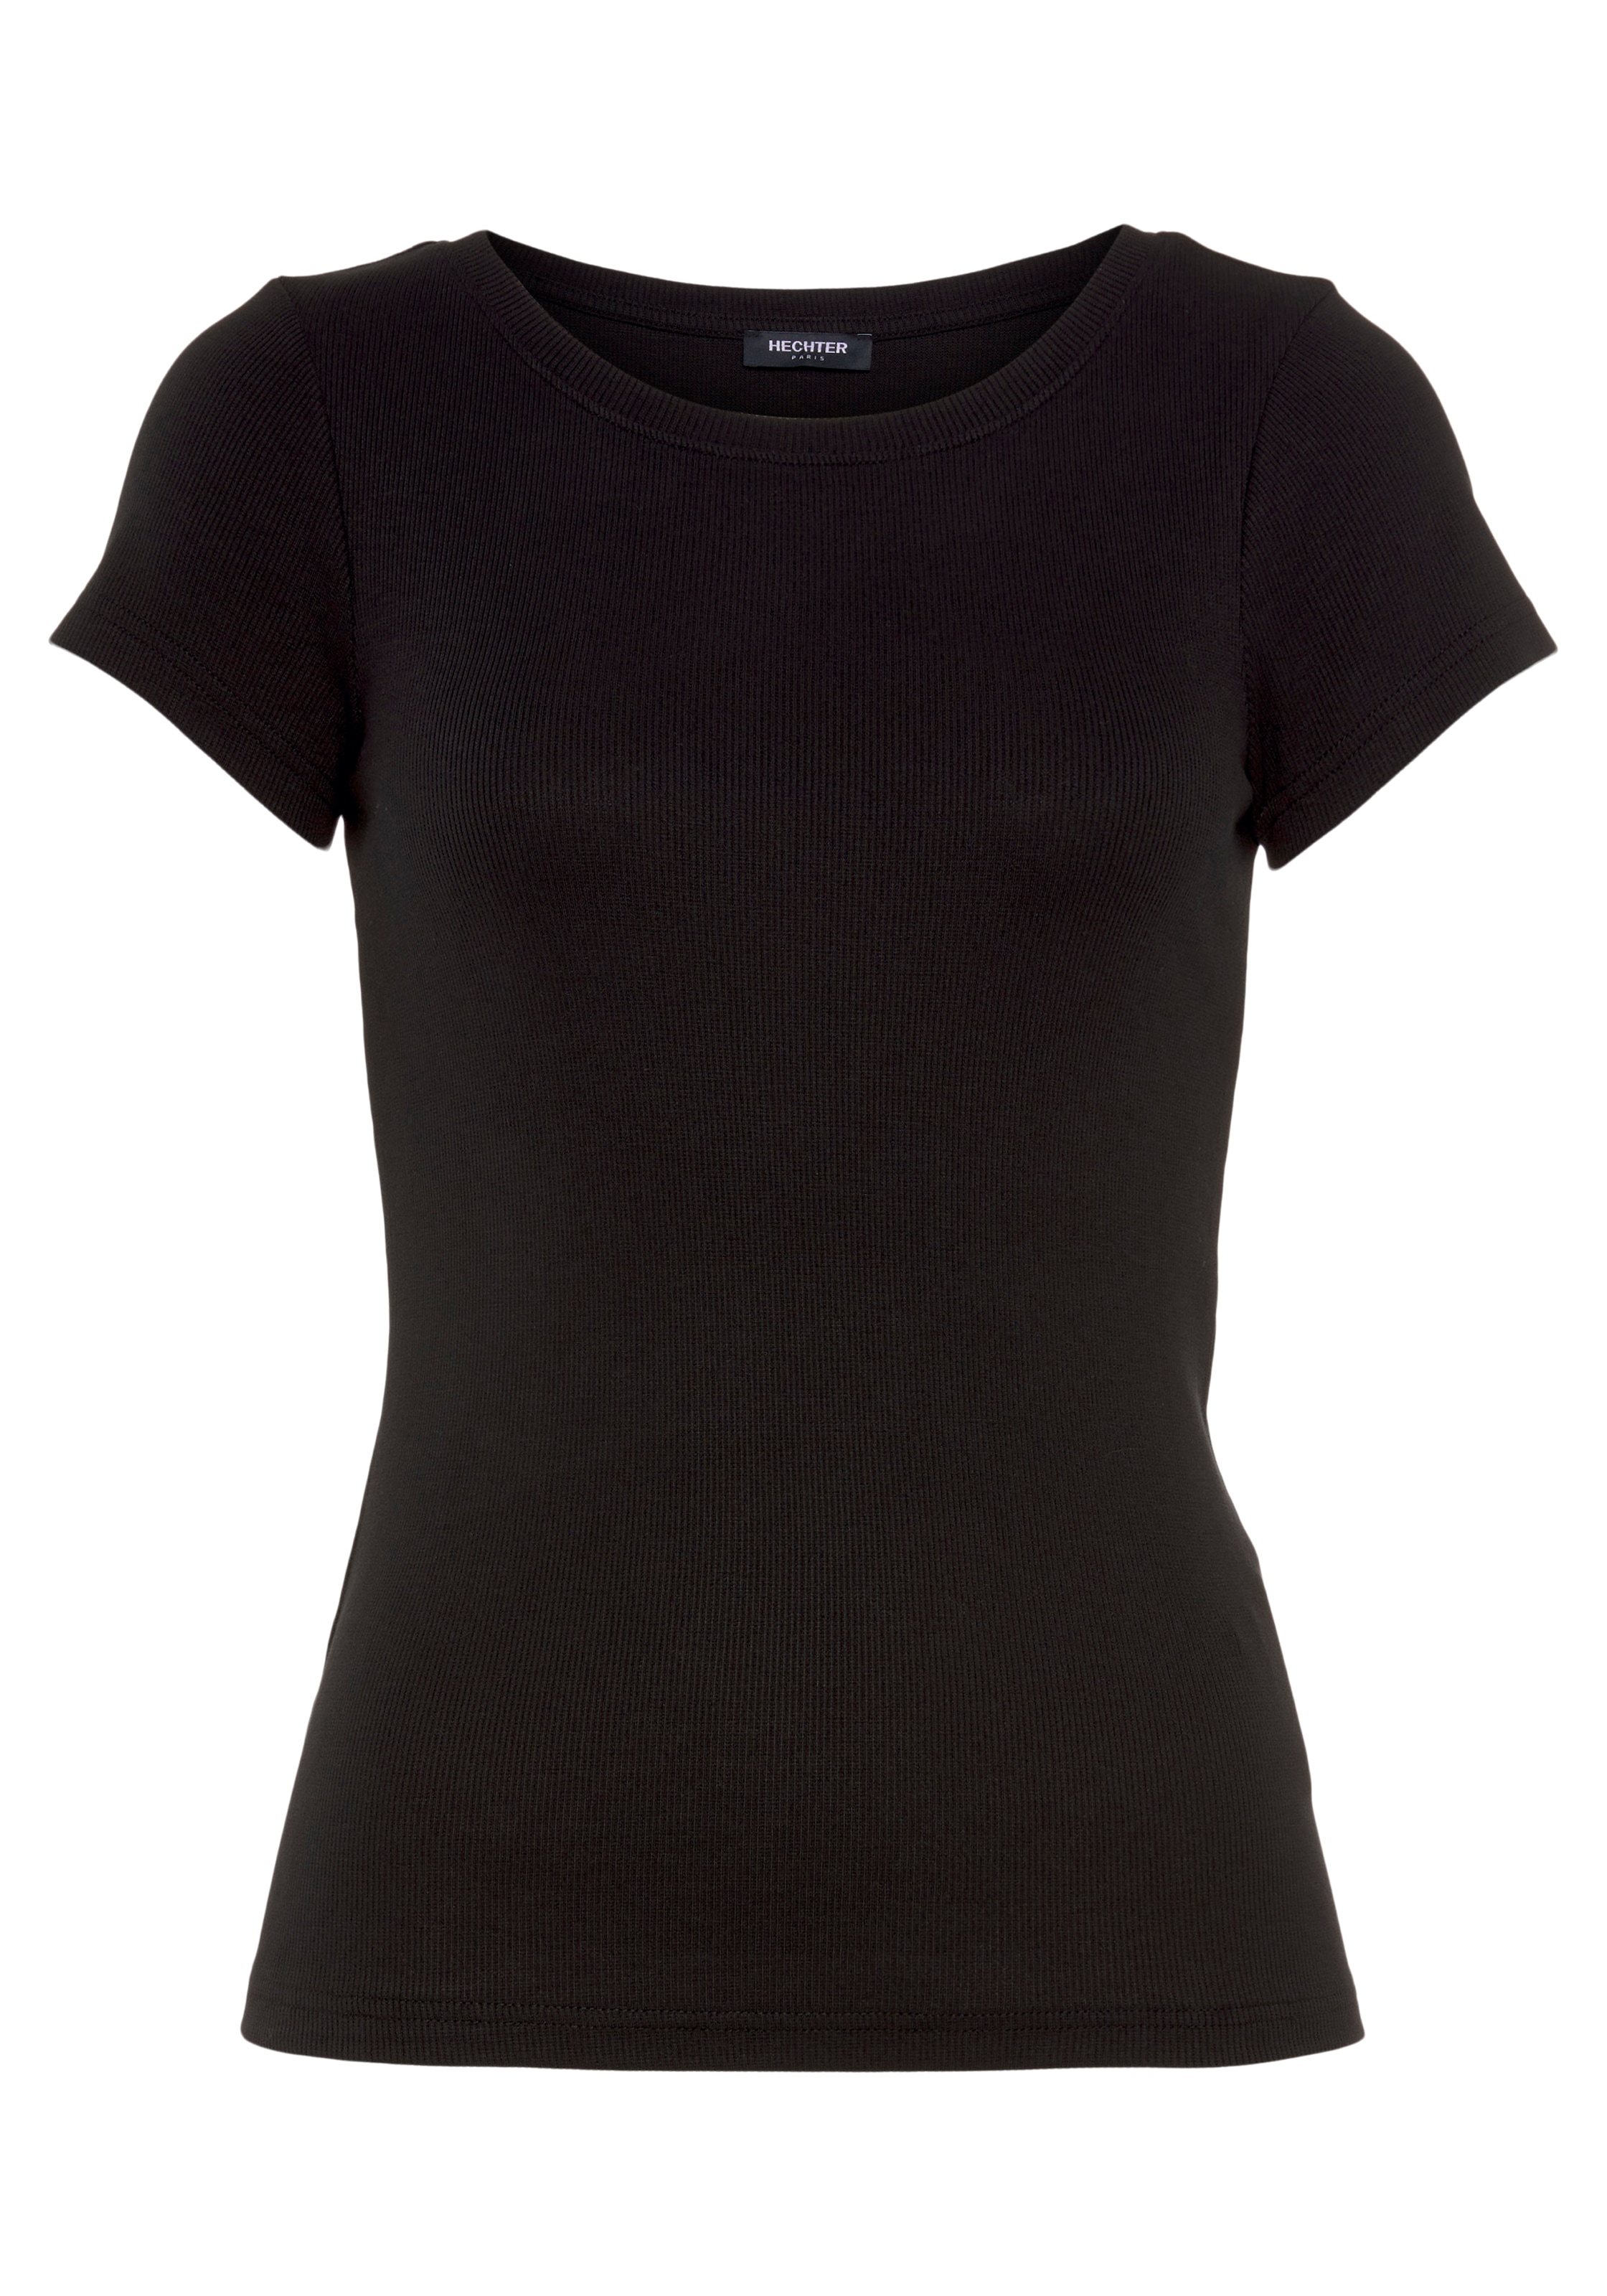 HECHTER PARIS Strandshirt, in Rippoptik - NEUE KOLLEKTION online kaufen |  BAUR